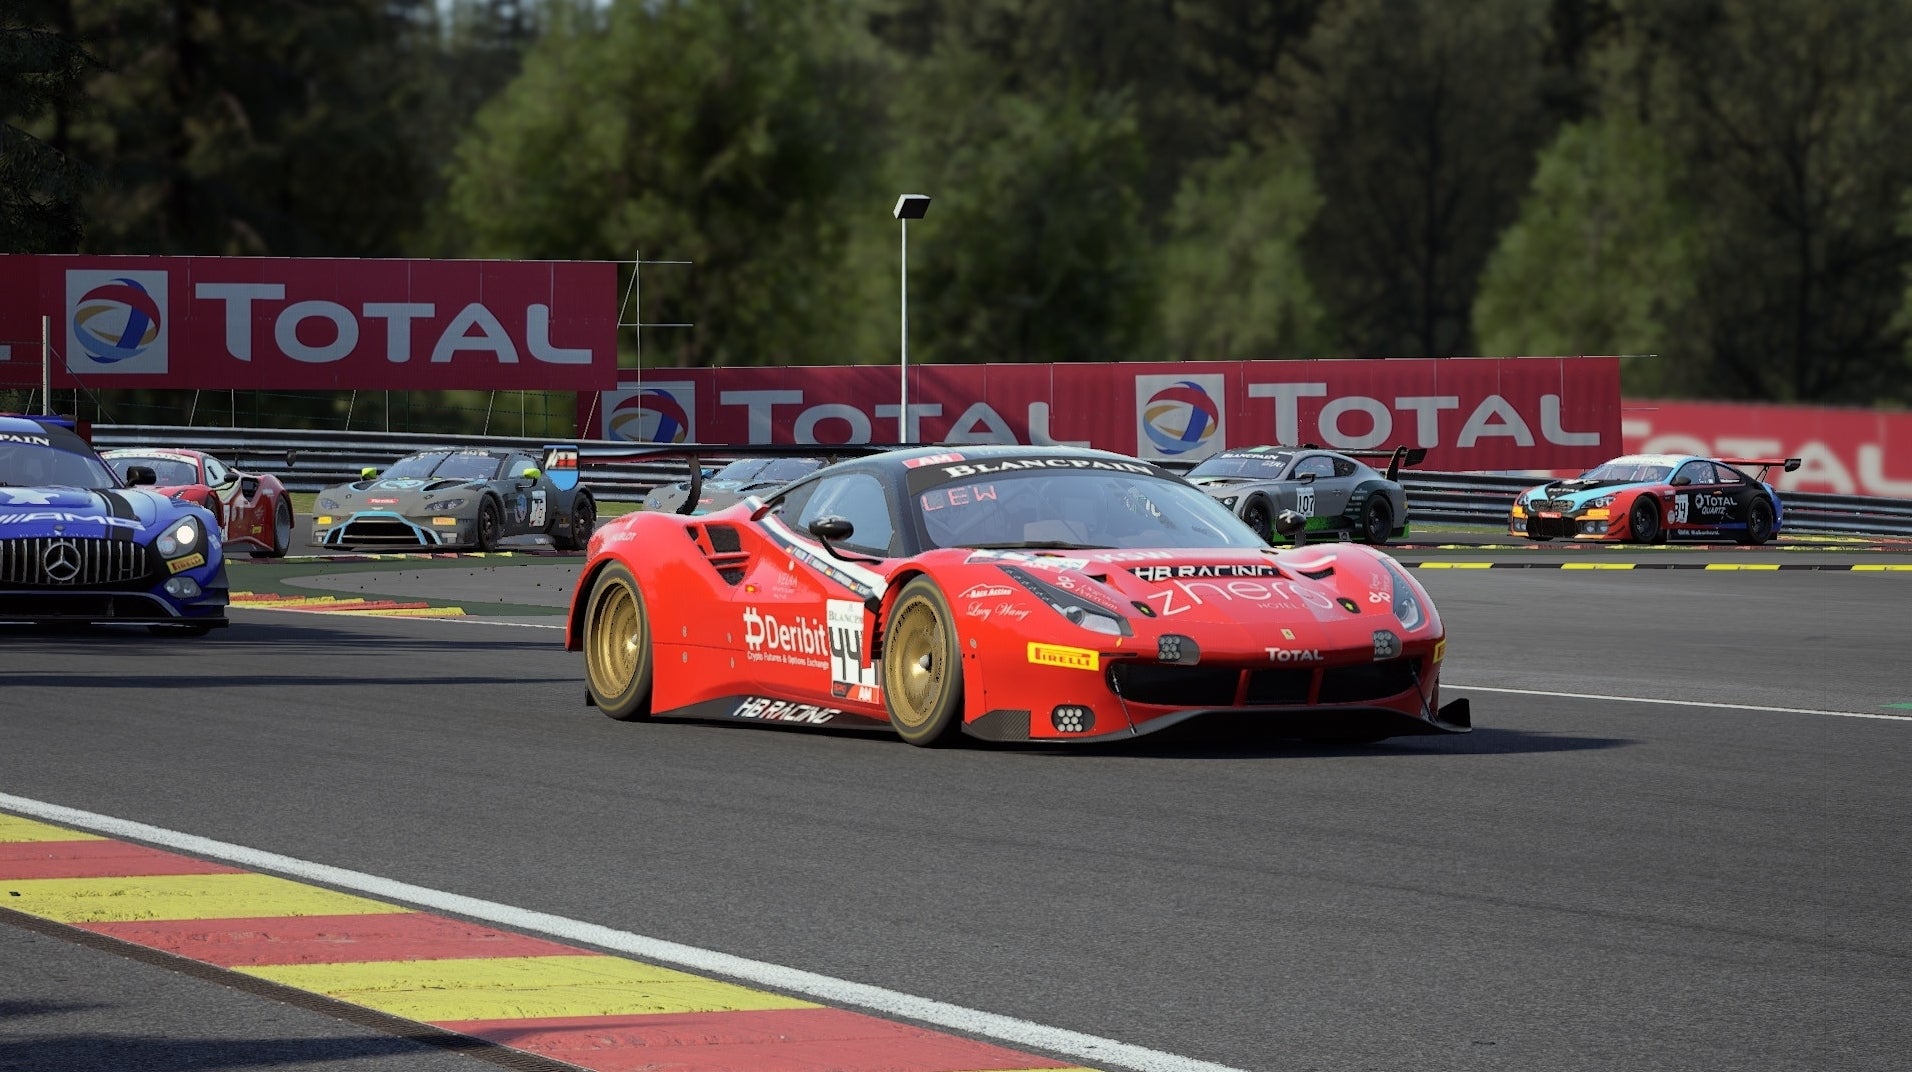 Afbeeldingen van Assetto Corsa Competizione toont het belang van racegames voor de echte motorsport